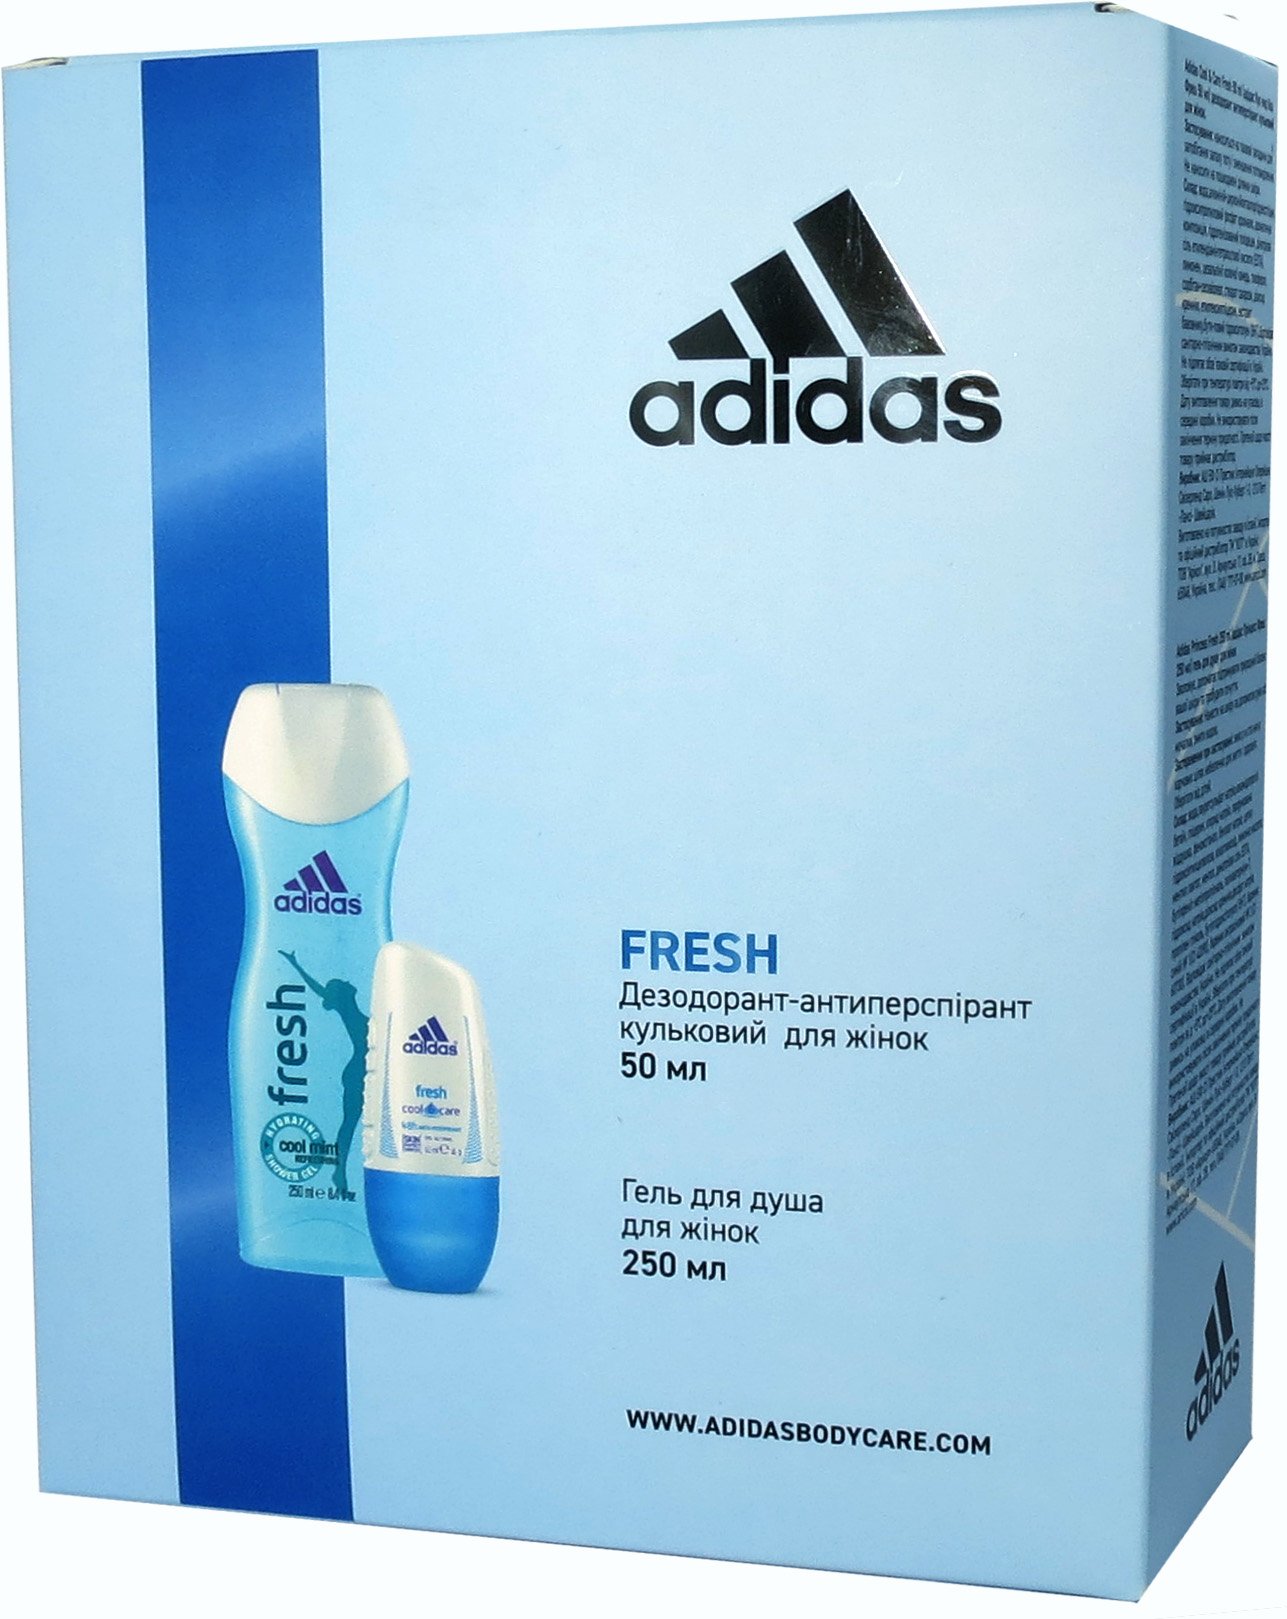 Набір для жінок Adidas 2020 Дезодорант-антиперспірант Fresh, 50 мл + Гель для душа, 250 мл - фото 1